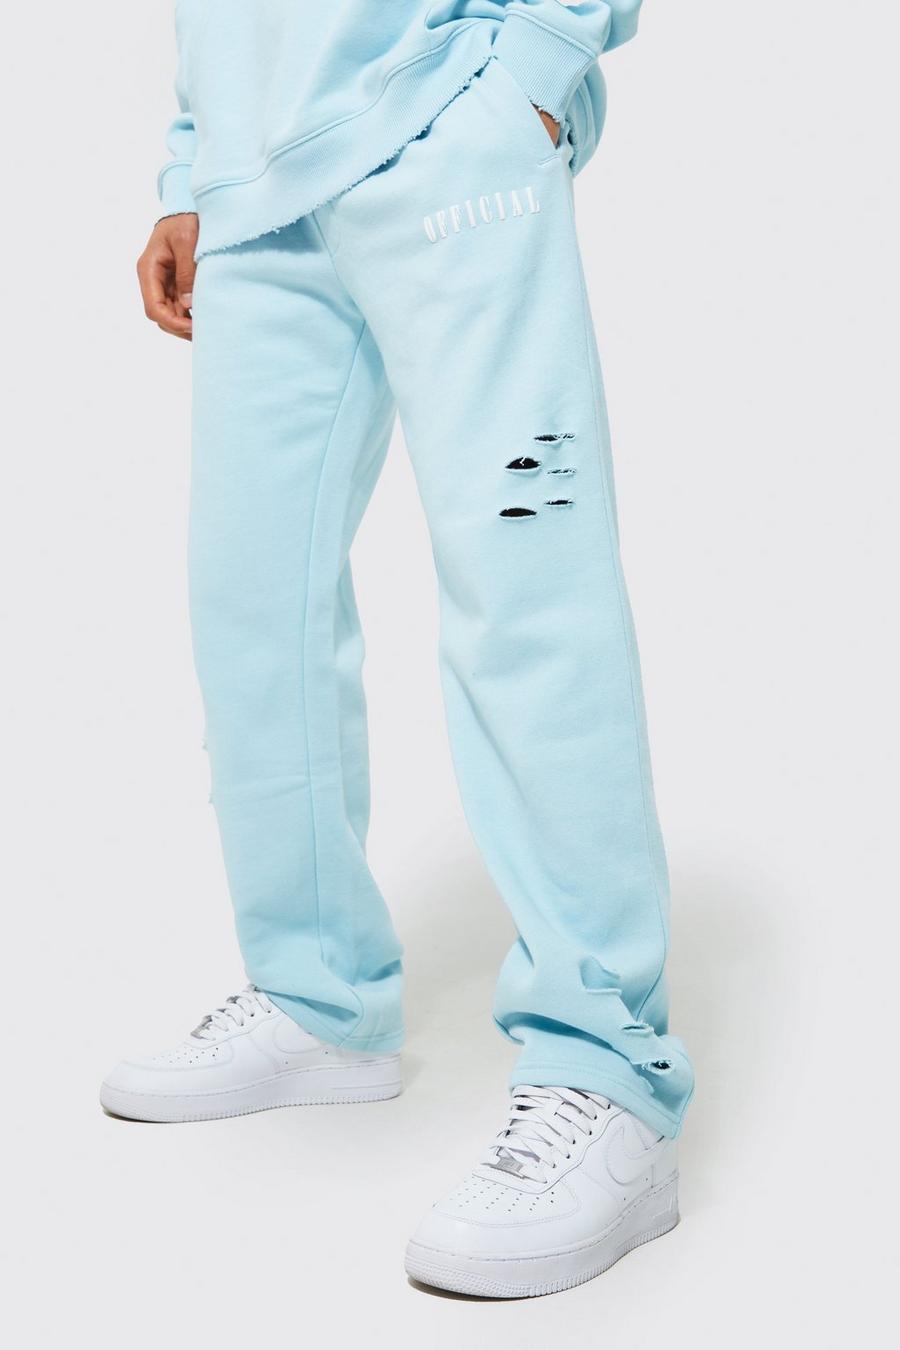 Pantaloni tuta a gamba ampia Official oversize effetto smagliato, Light blue azzurro